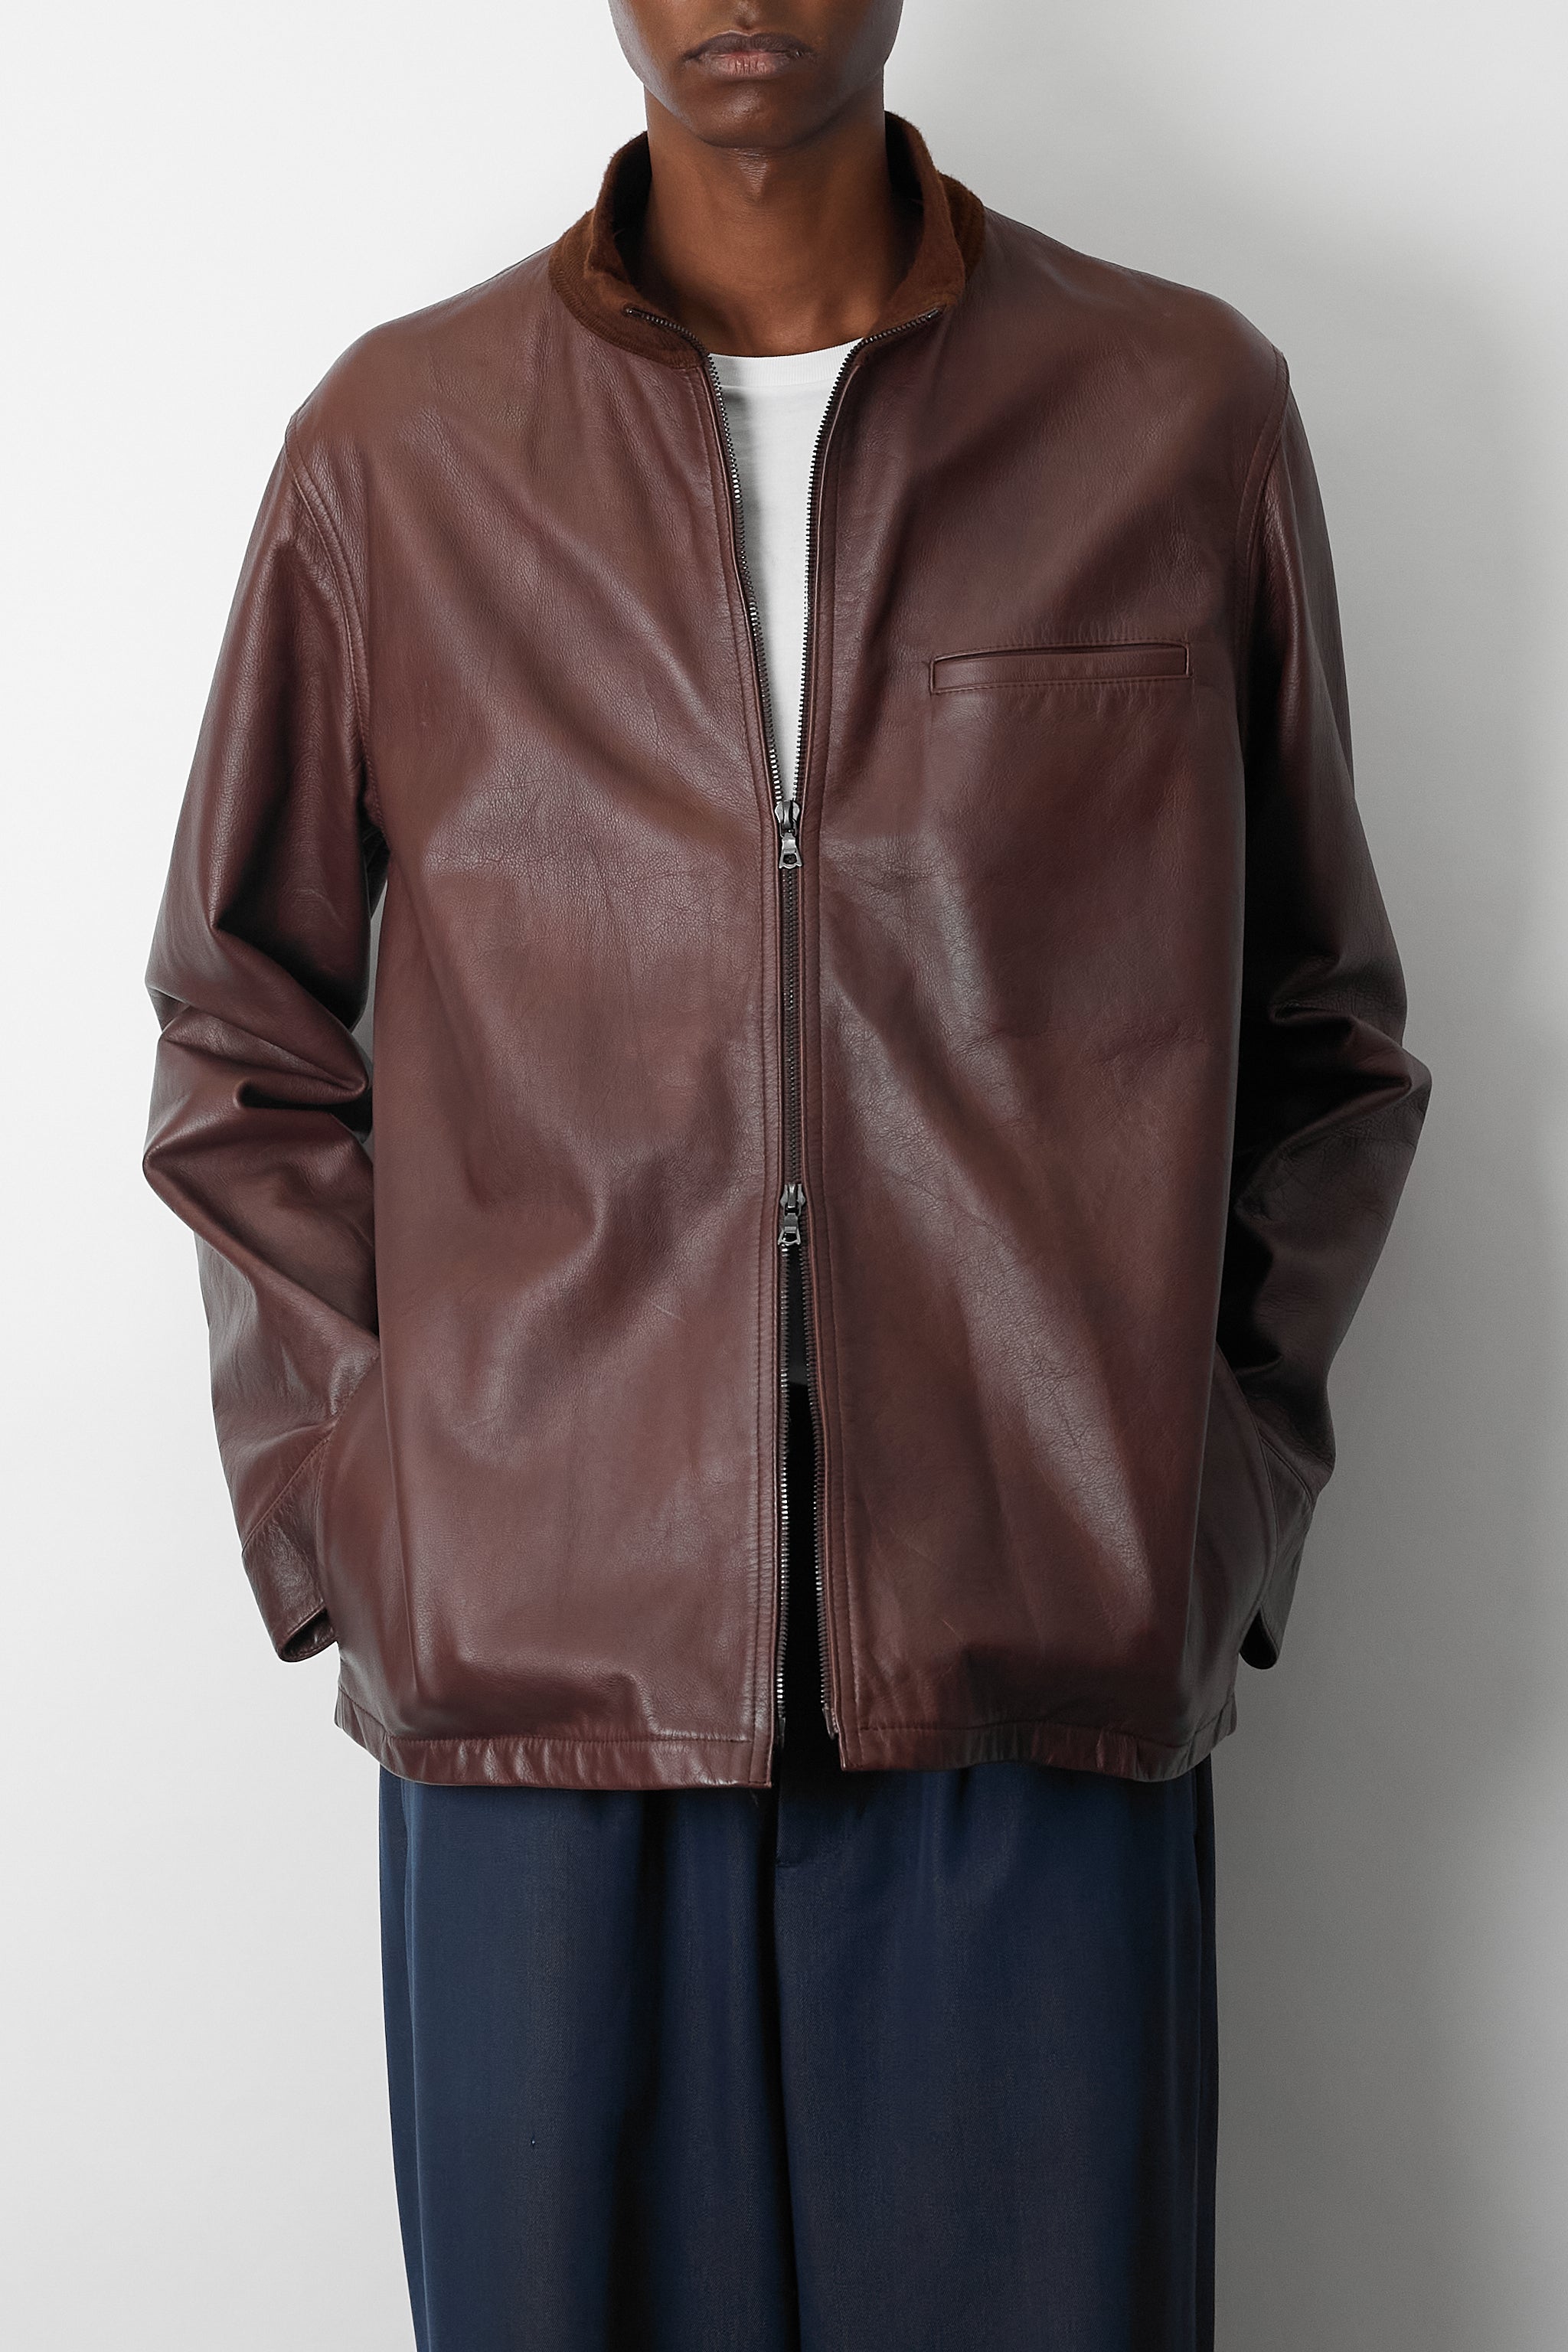 着丈60cm【A.P.C】Leather jacket made in France